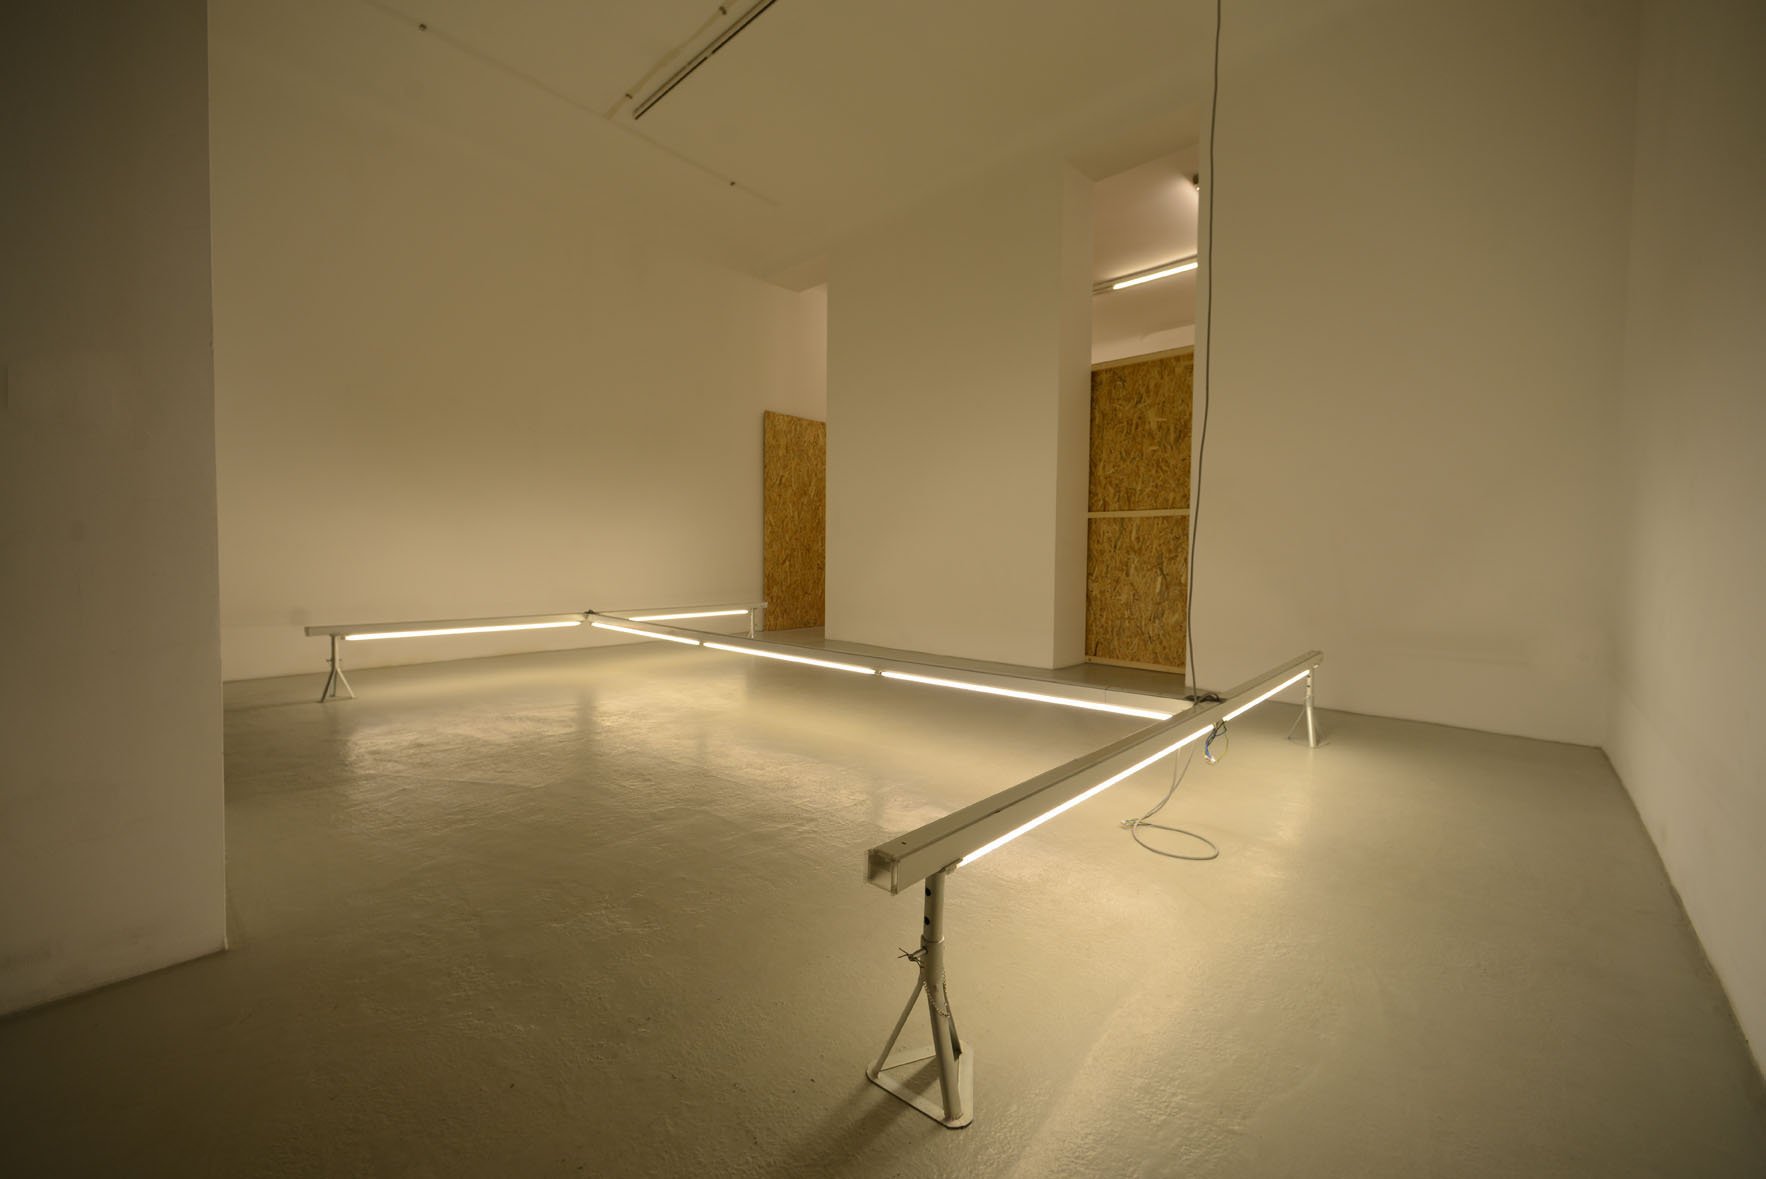 Giovanni Termini – Pregressa – installation view at Galleria Renata Fabbri, Milano 2016 – photo Michele Alberto Sereni